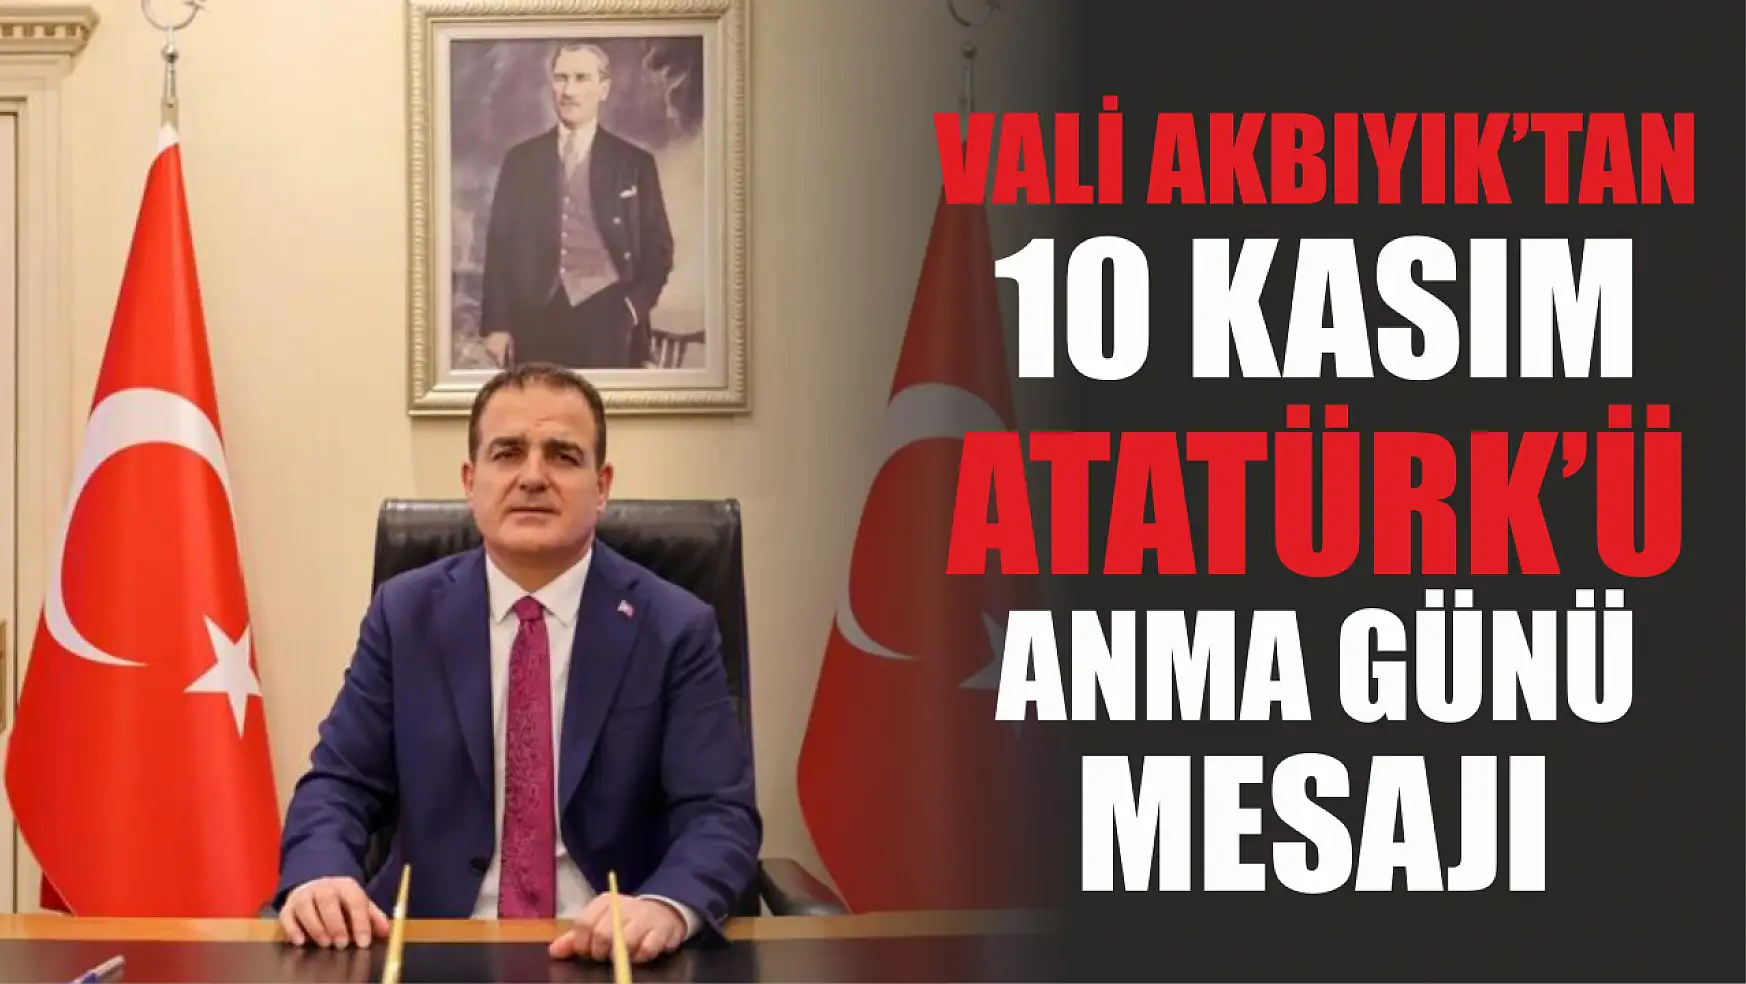 Vali Akbıyık'tan 10 Kasım Atatürk'ü Anma günü mesajı